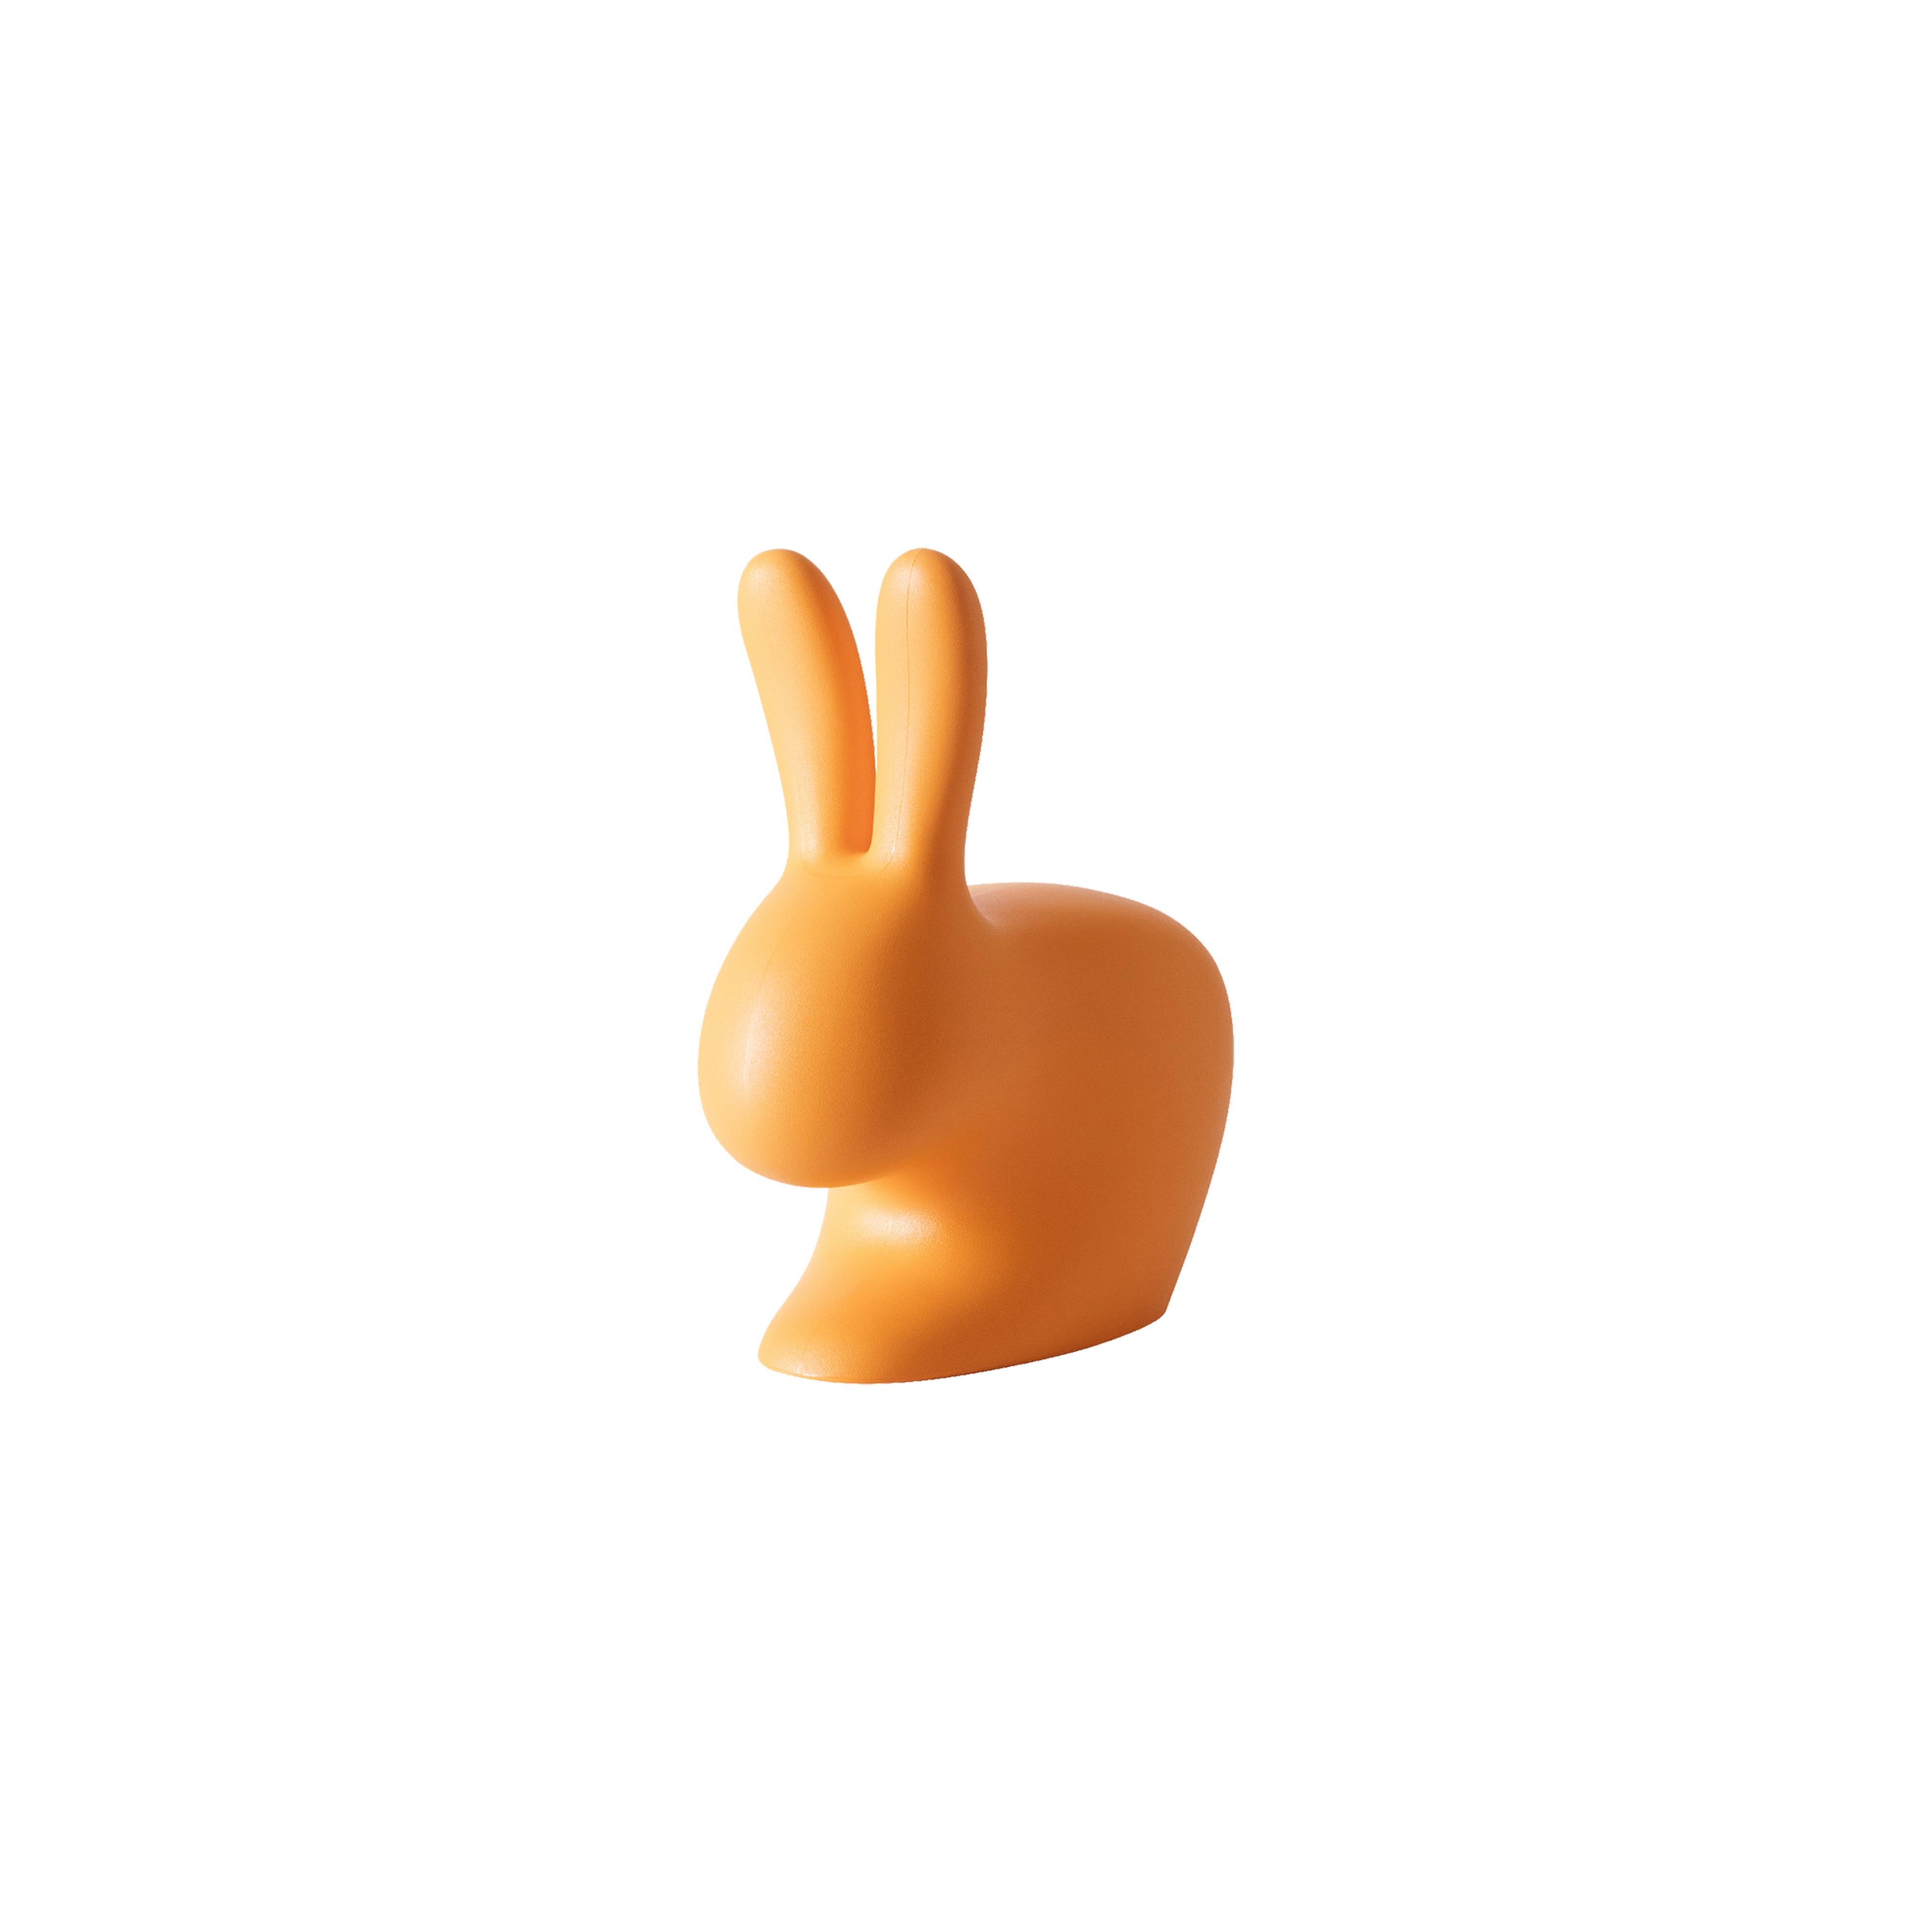 For Sale: Orange Small Black Plastic Rabbit Doorstopper by Stefano Giovannoni